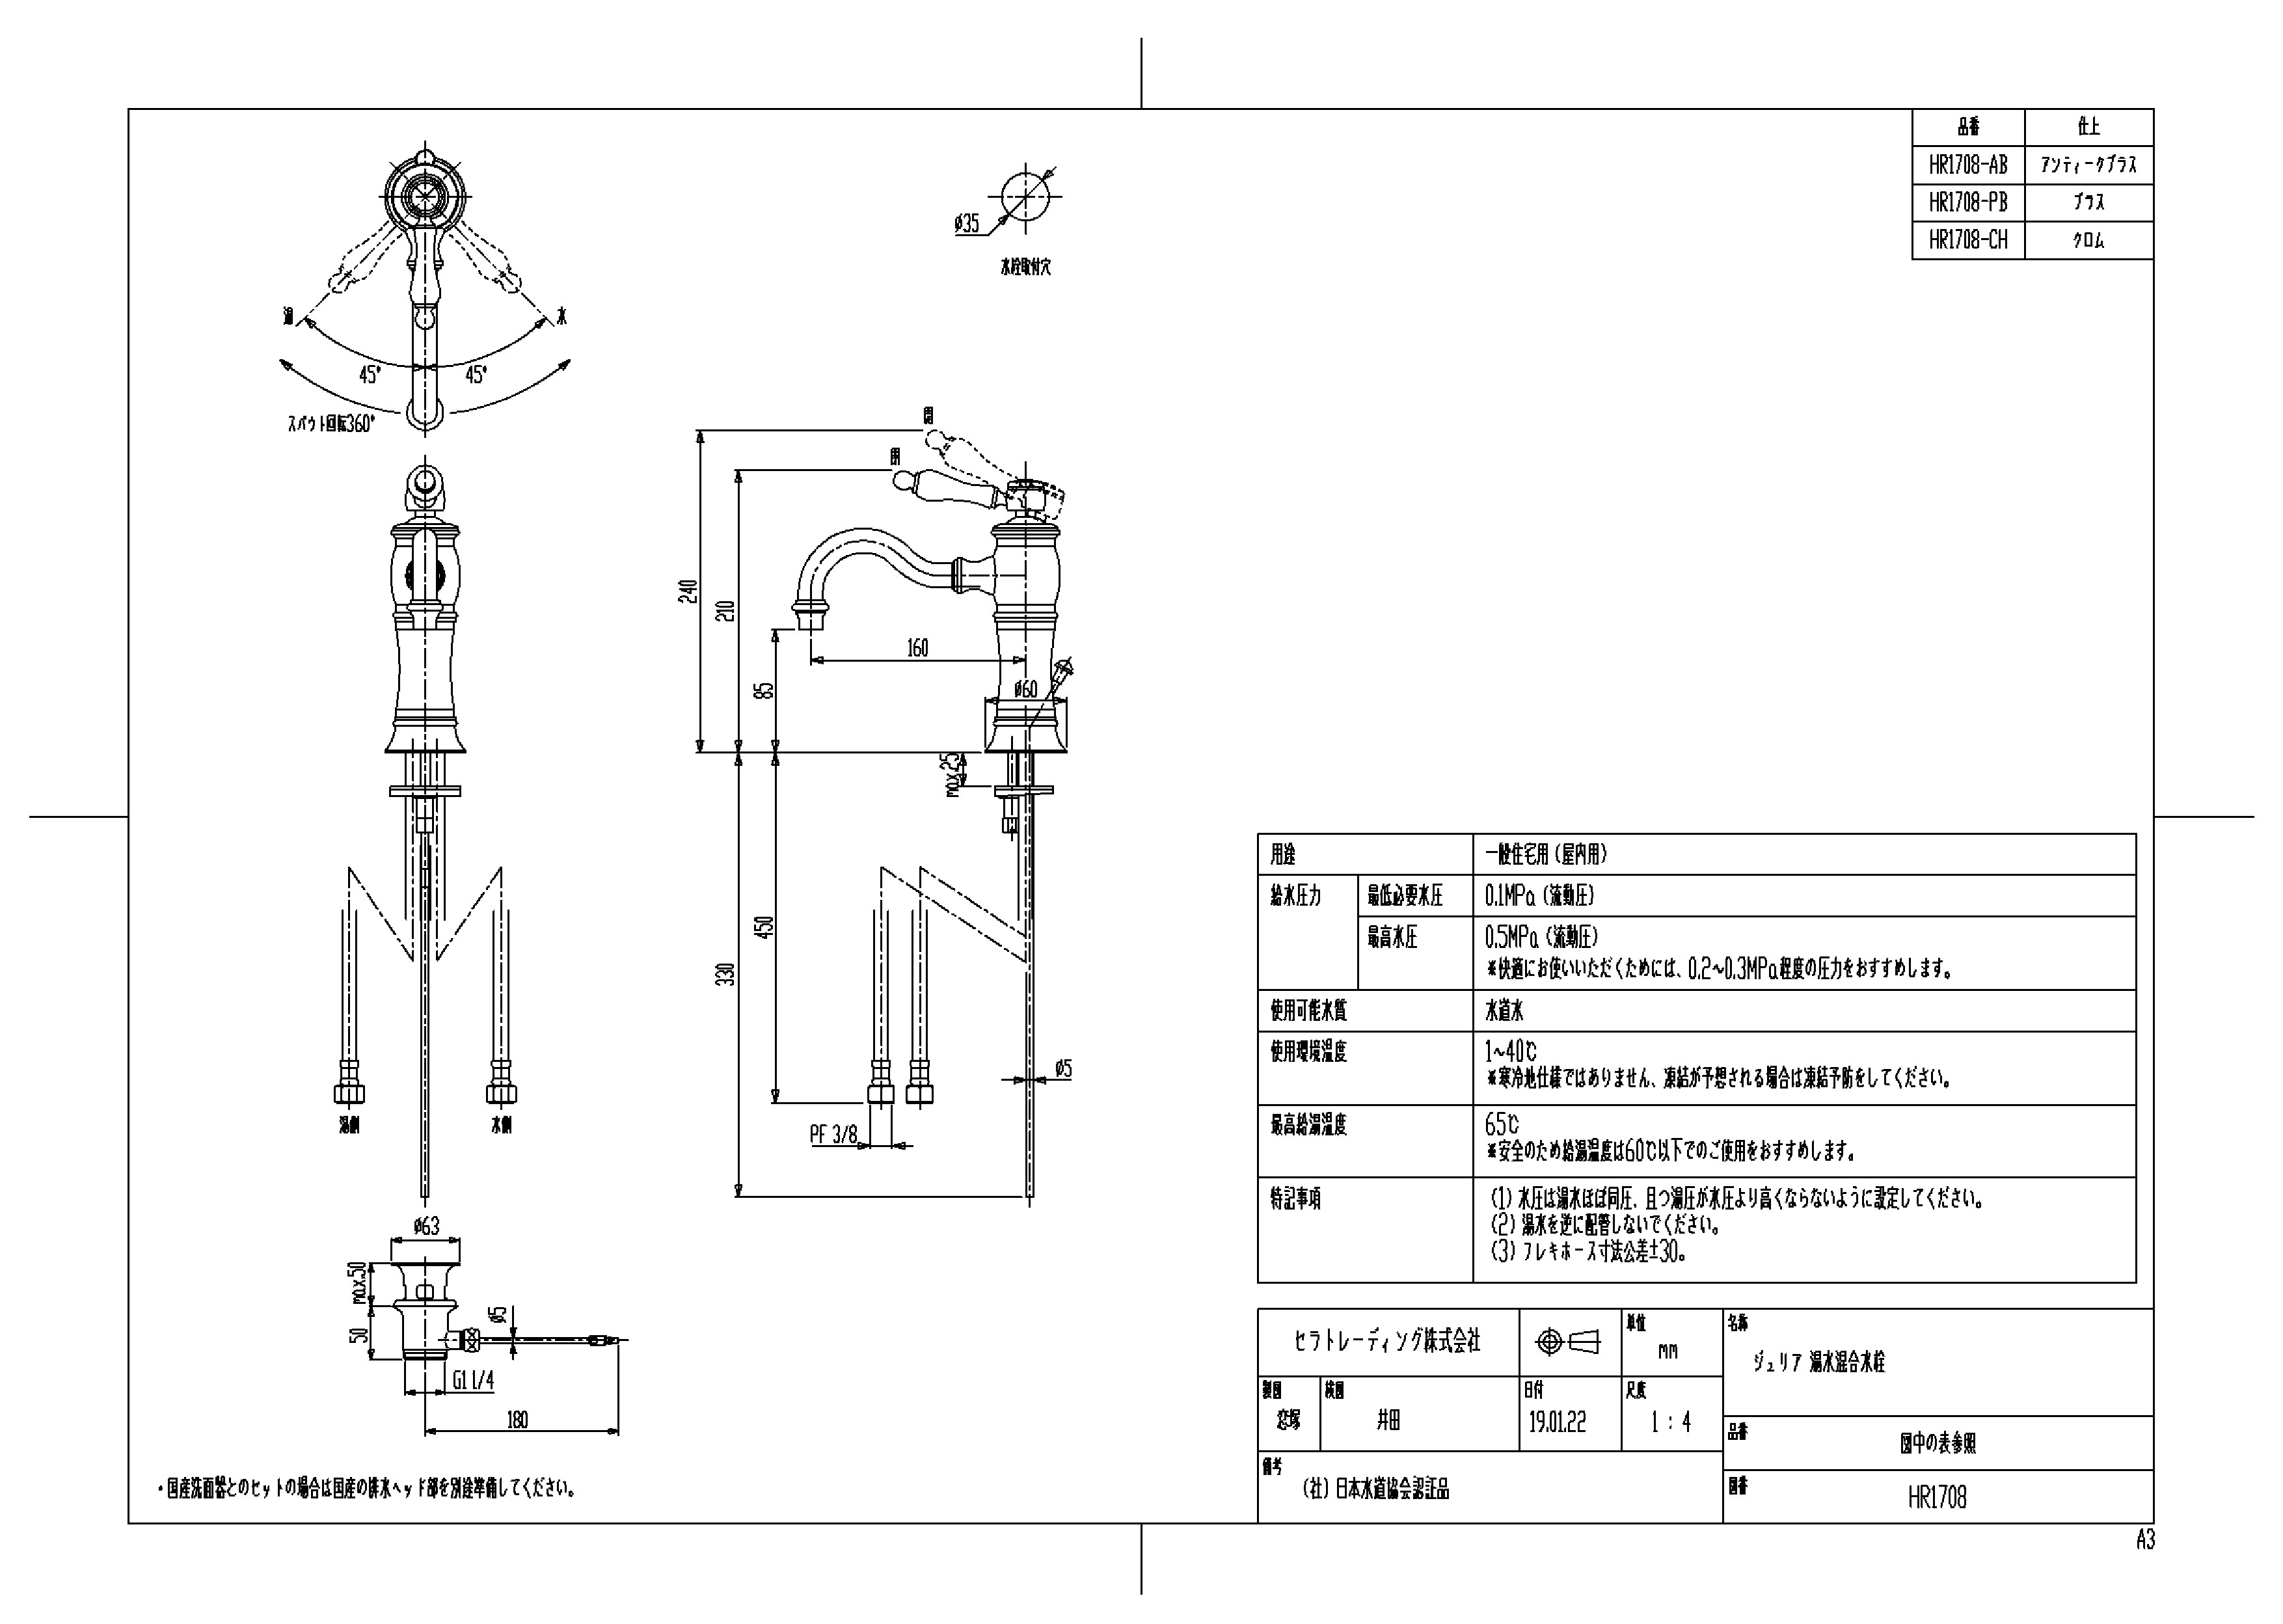 セラトレーディング:湯水混合栓 型式:HR1708-PB - 3